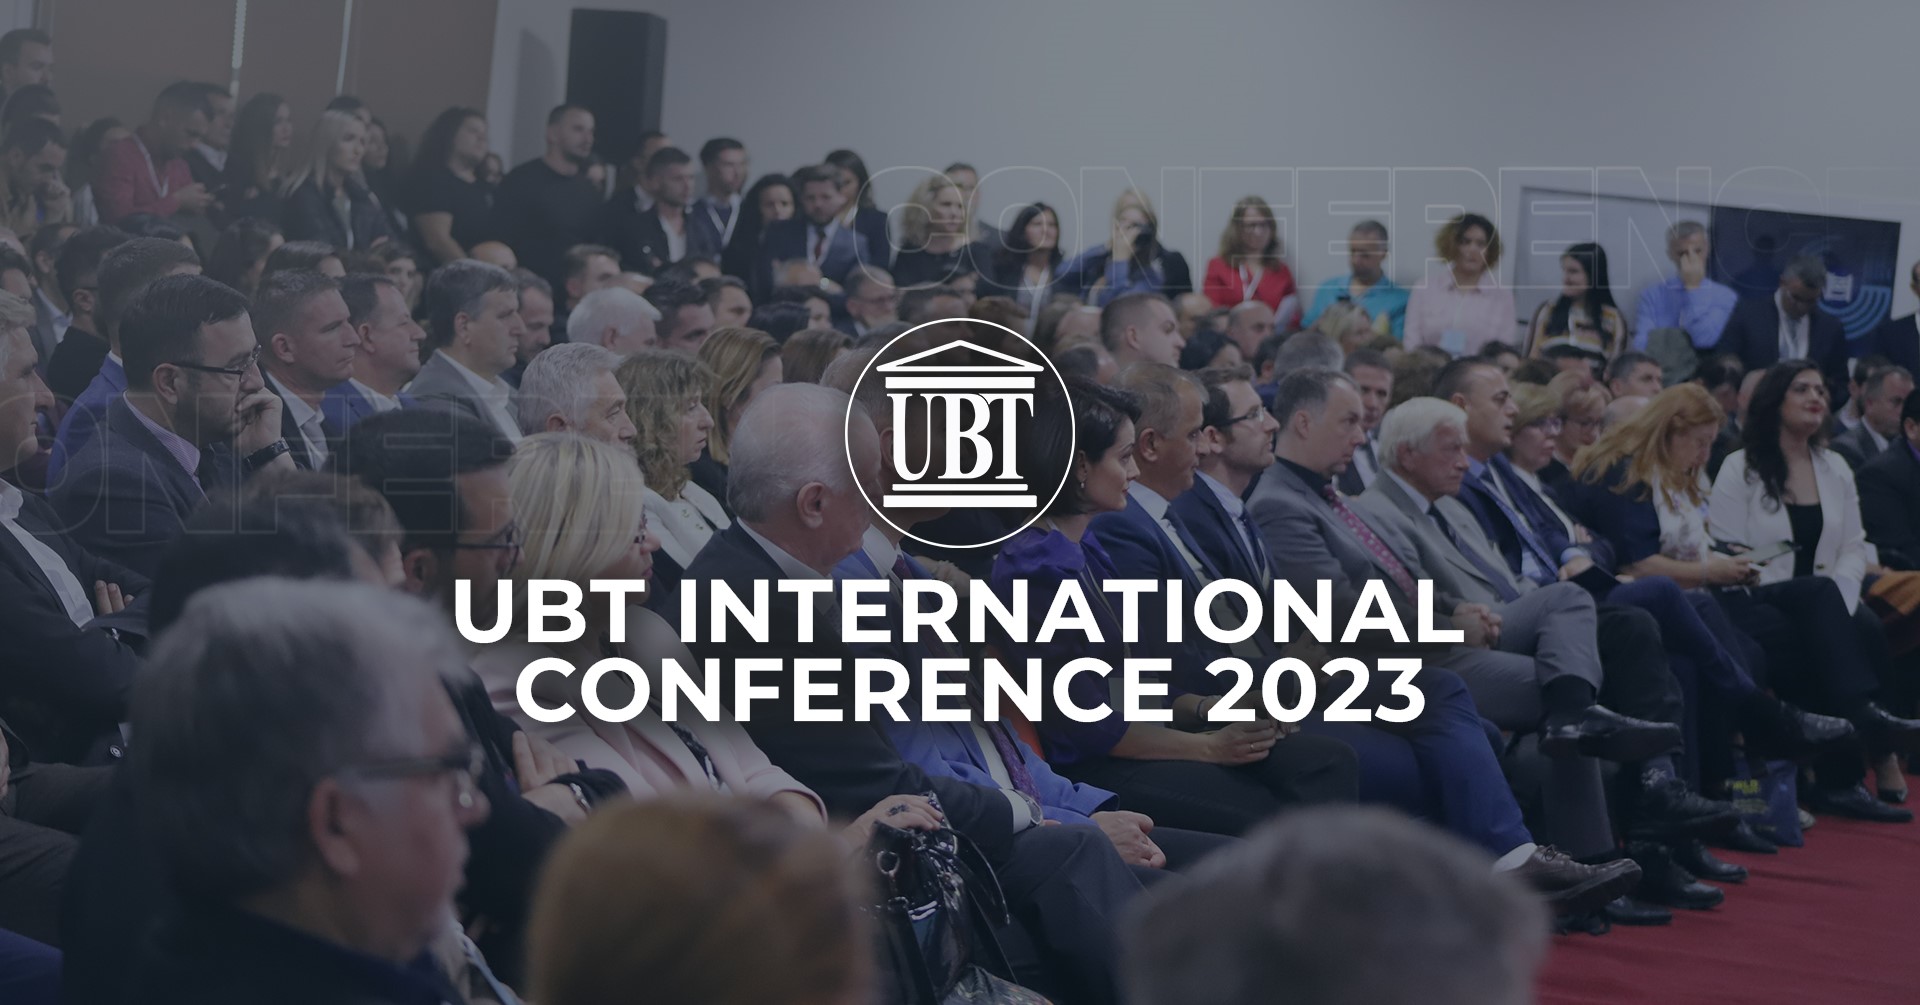 UBT po vazhdon të pranojë abstraktet për Konferencën Ndërkombëtare 2023